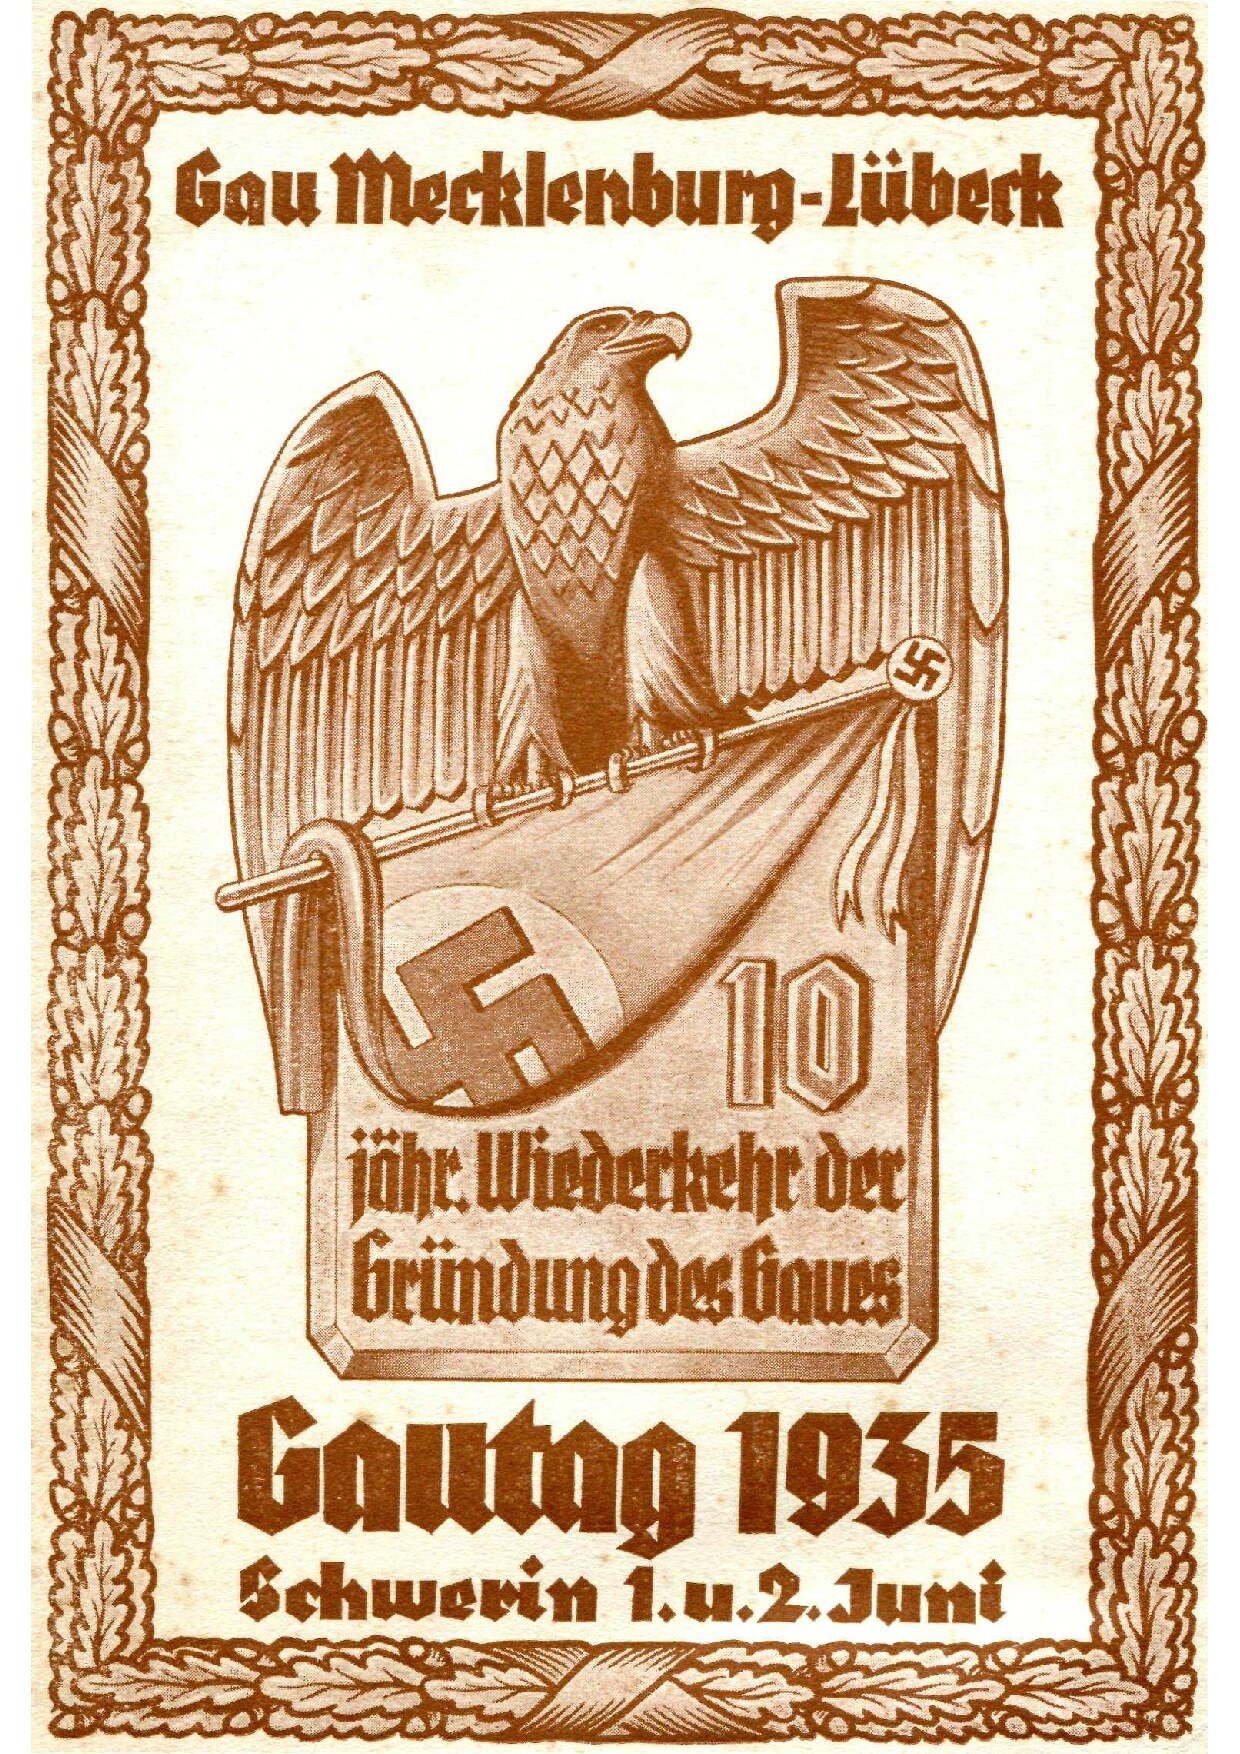 Gautag 1935 - Schwerin 1. und 2. Juni - Festschrift (84 S., Scan, Fraktur)